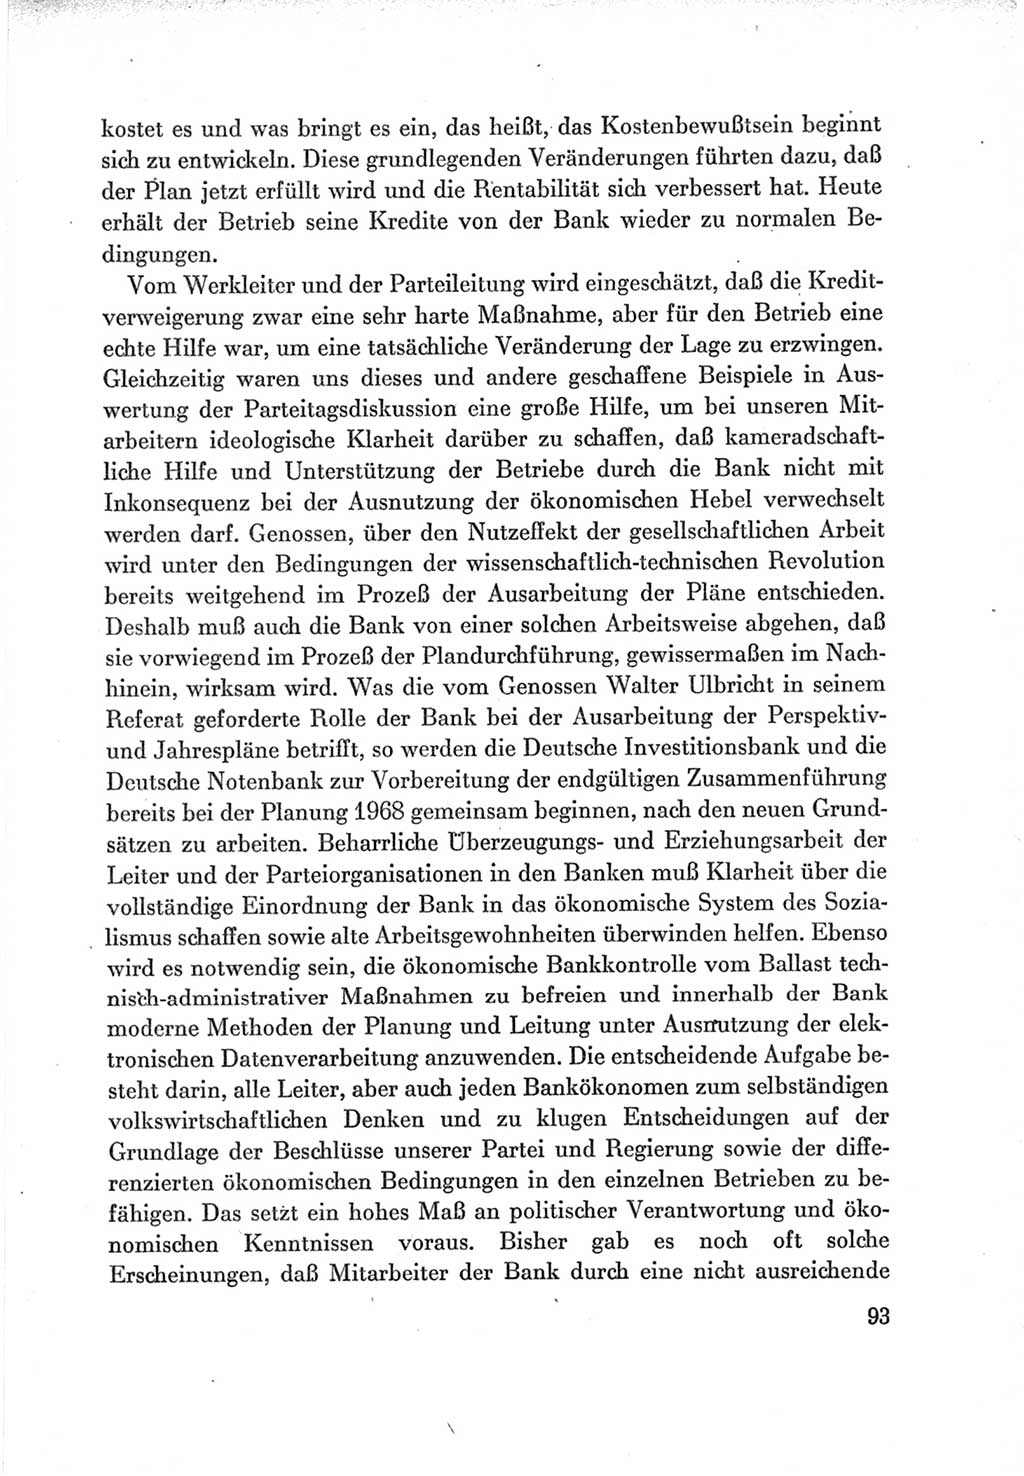 Protokoll der Verhandlungen des Ⅶ. Parteitages der Sozialistischen Einheitspartei Deutschlands (SED) [Deutsche Demokratische Republik (DDR)] 1967, Band Ⅲ, Seite 93 (Prot. Verh. Ⅶ. PT SED DDR 1967, Bd. Ⅲ, S. 93)